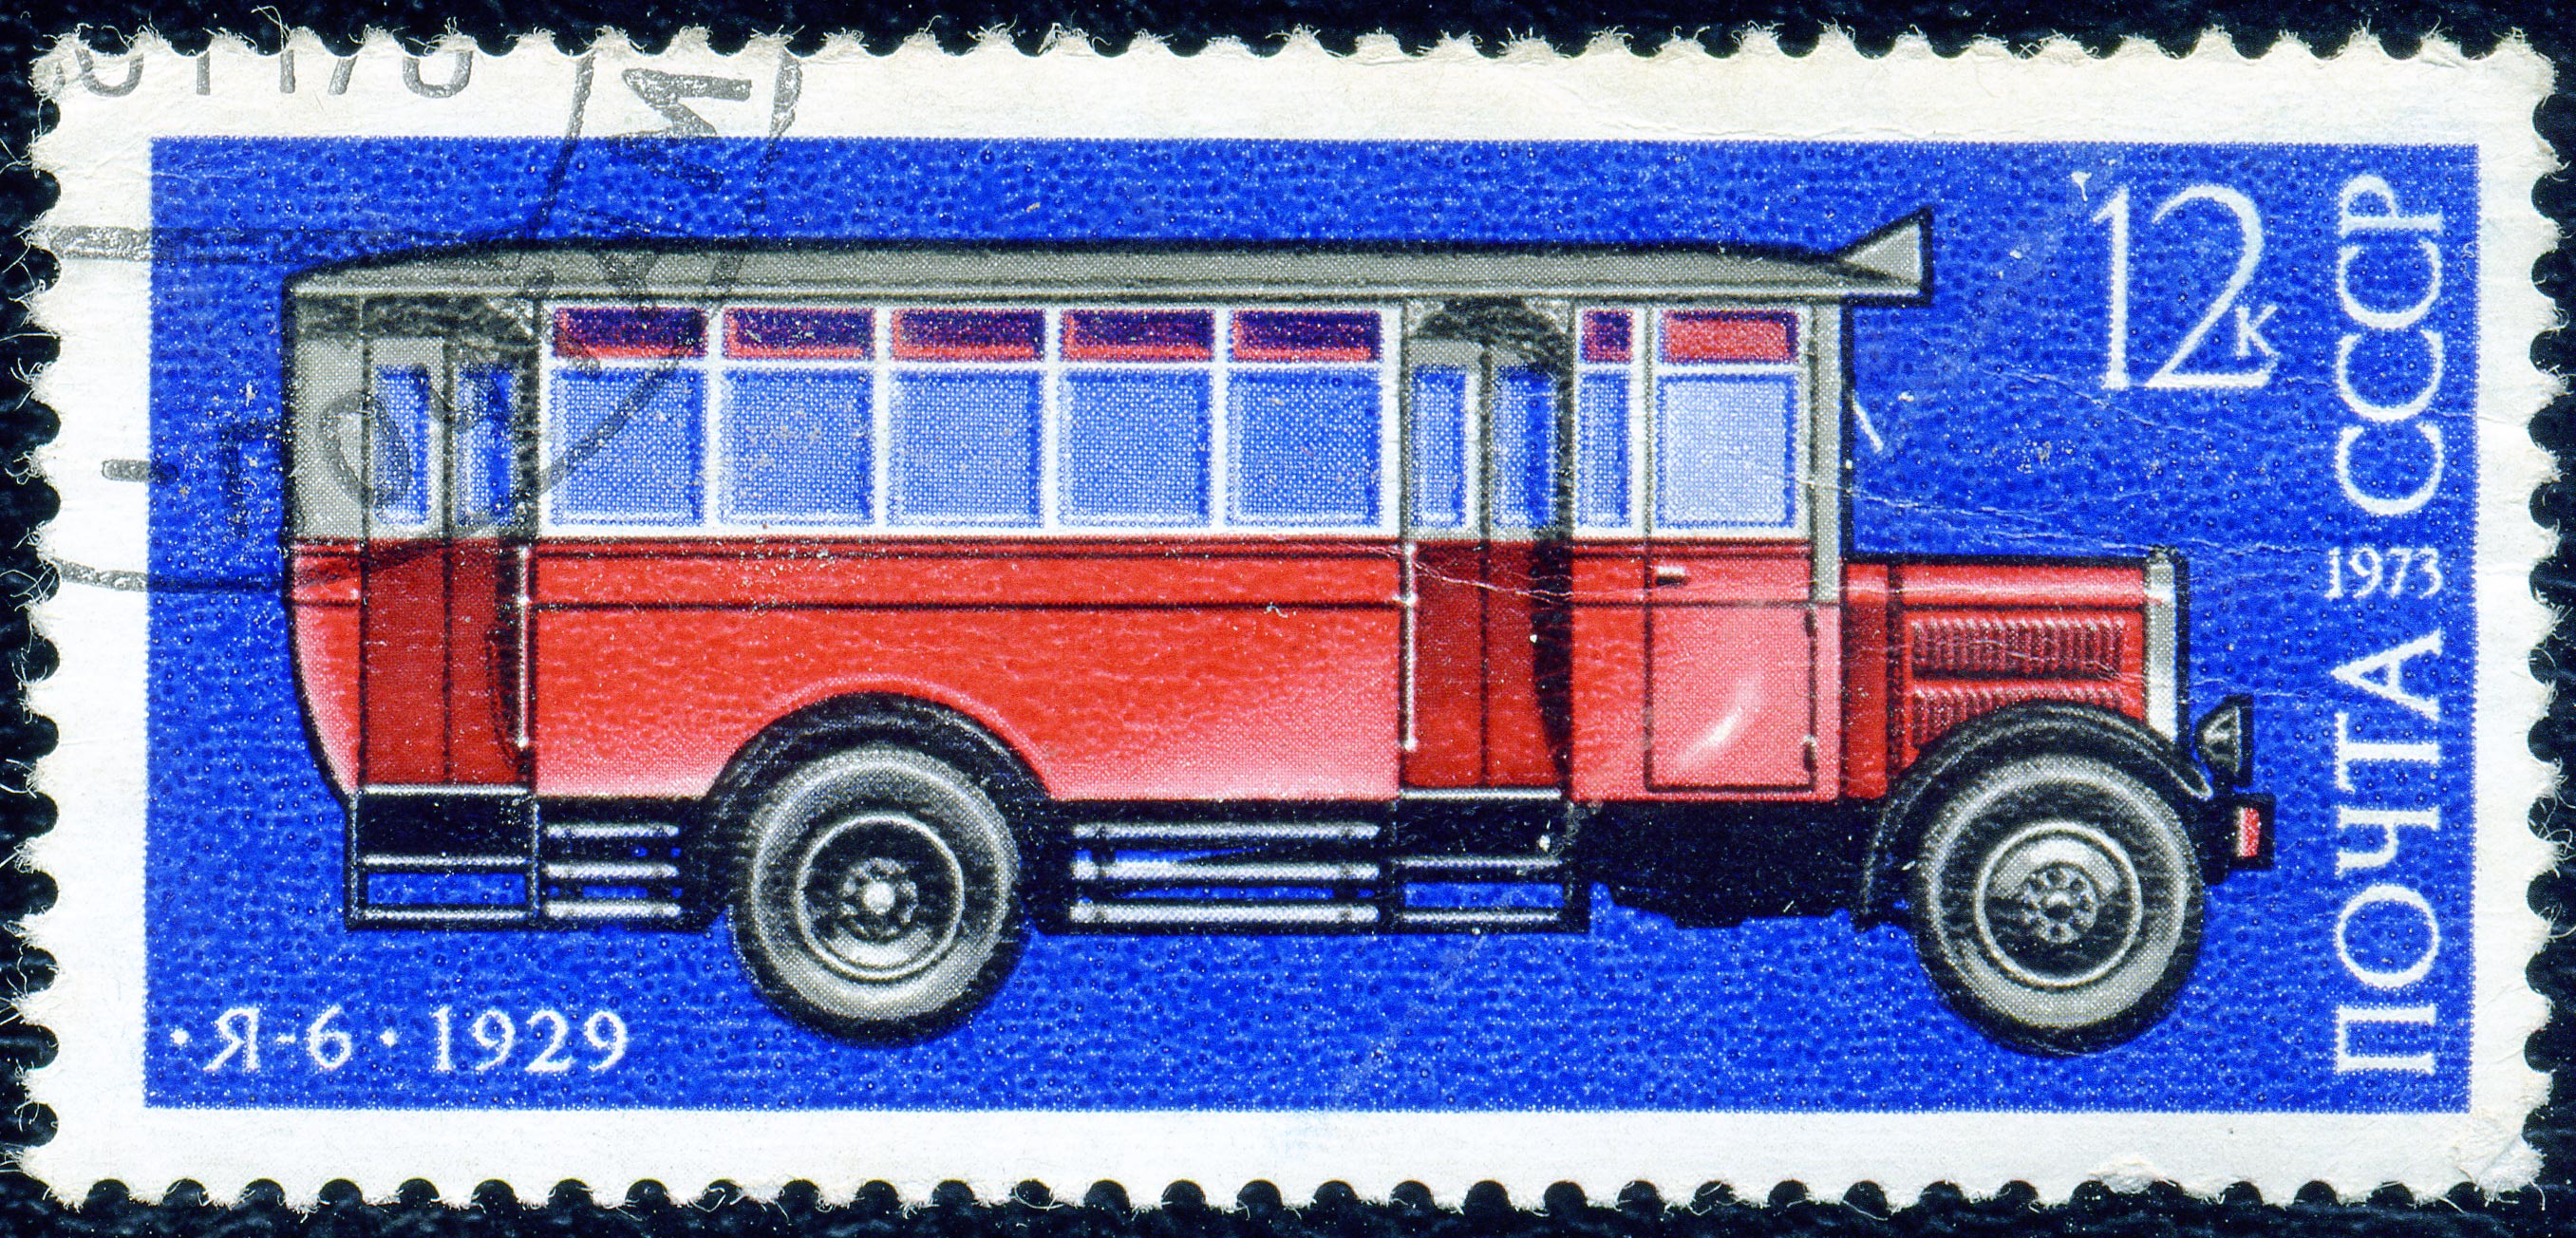 1973. Я-6